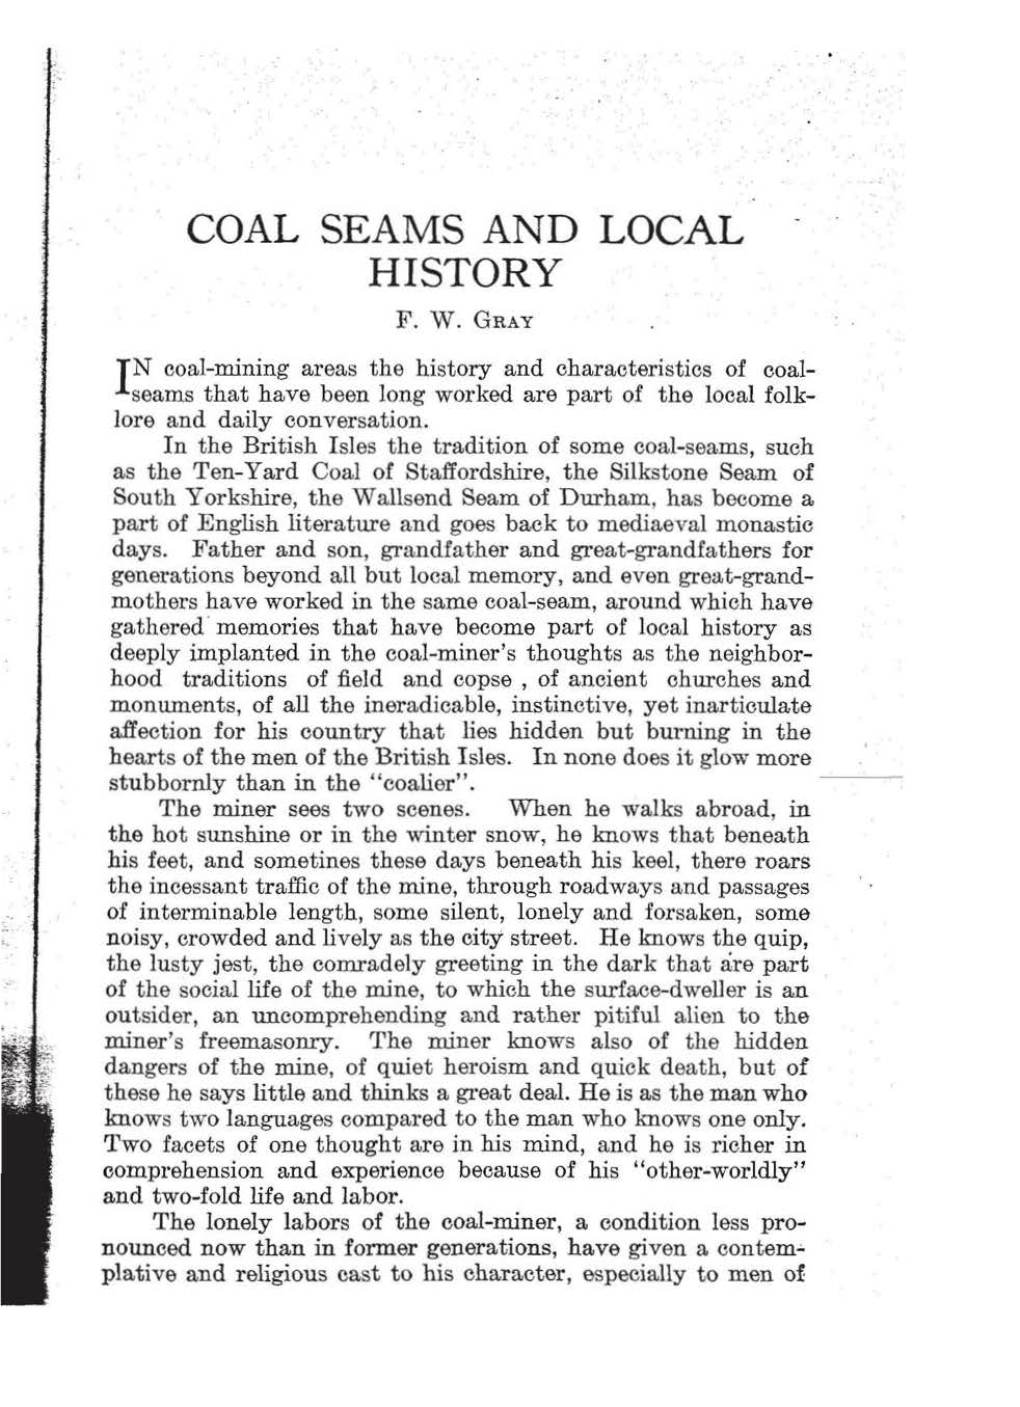 Coal Seams and Local History